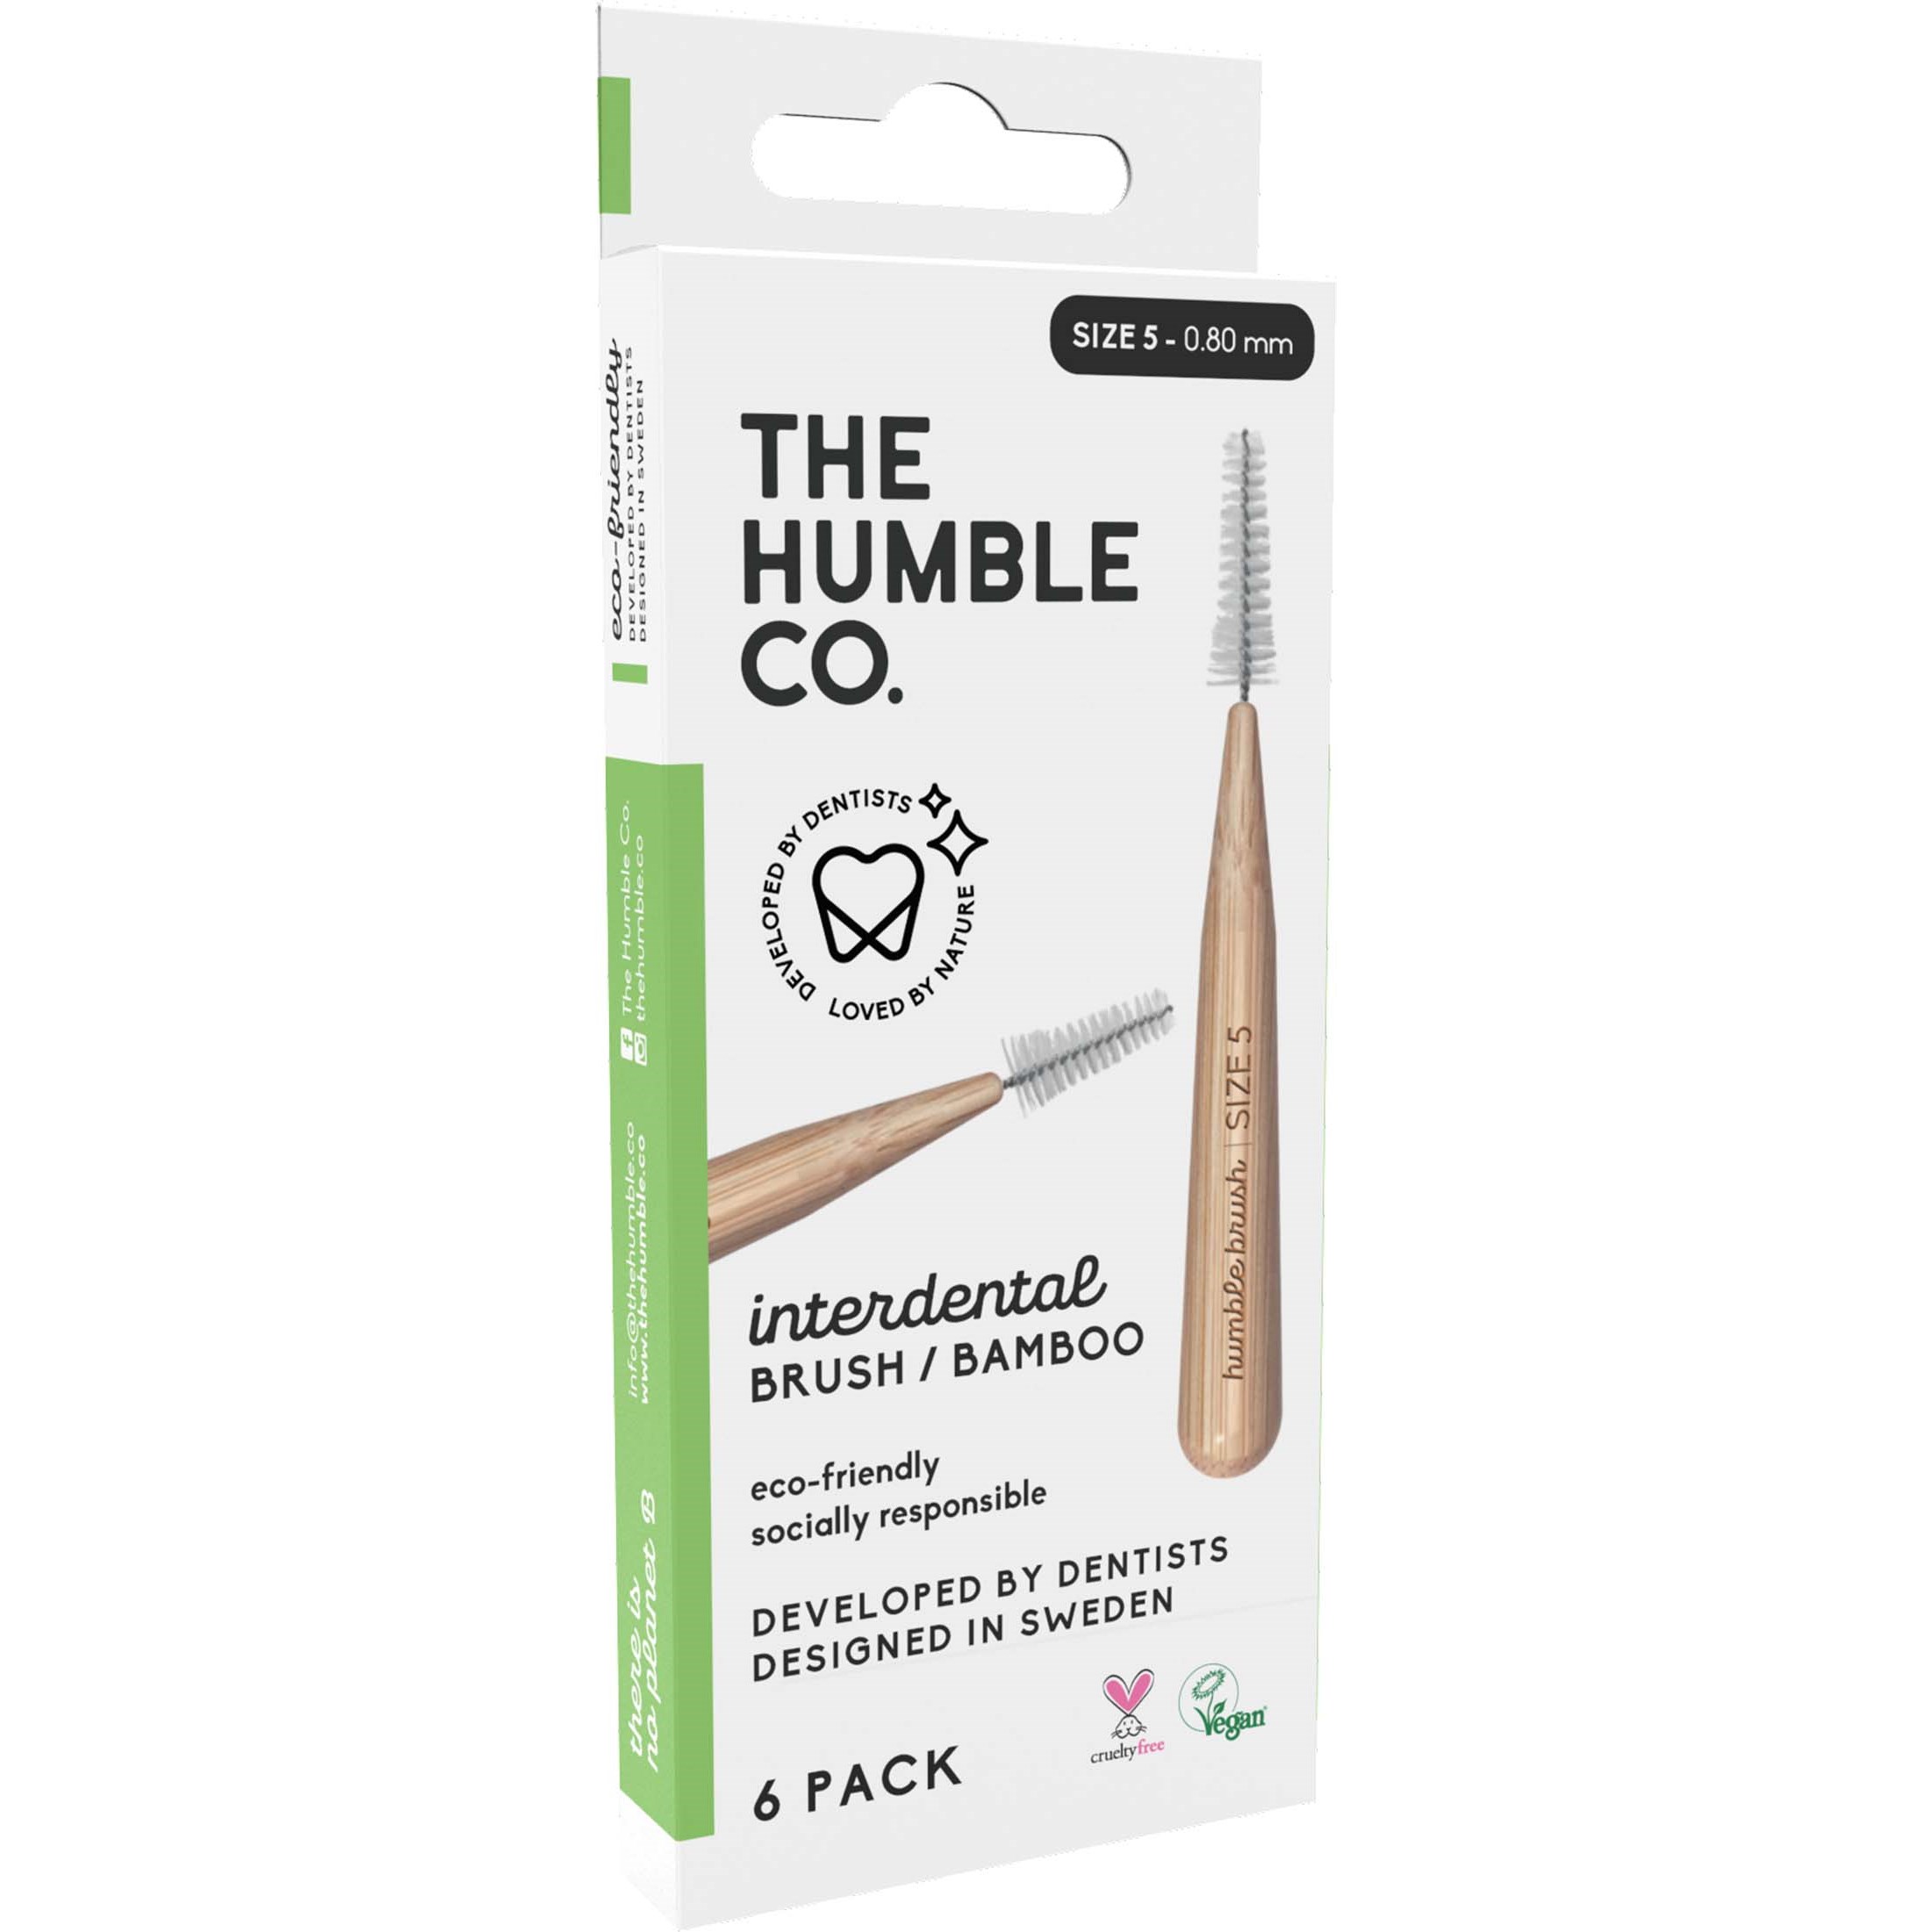 Bilde av The Humble Co. Interdental Bamboo Brush 6-pack Size 5 Green